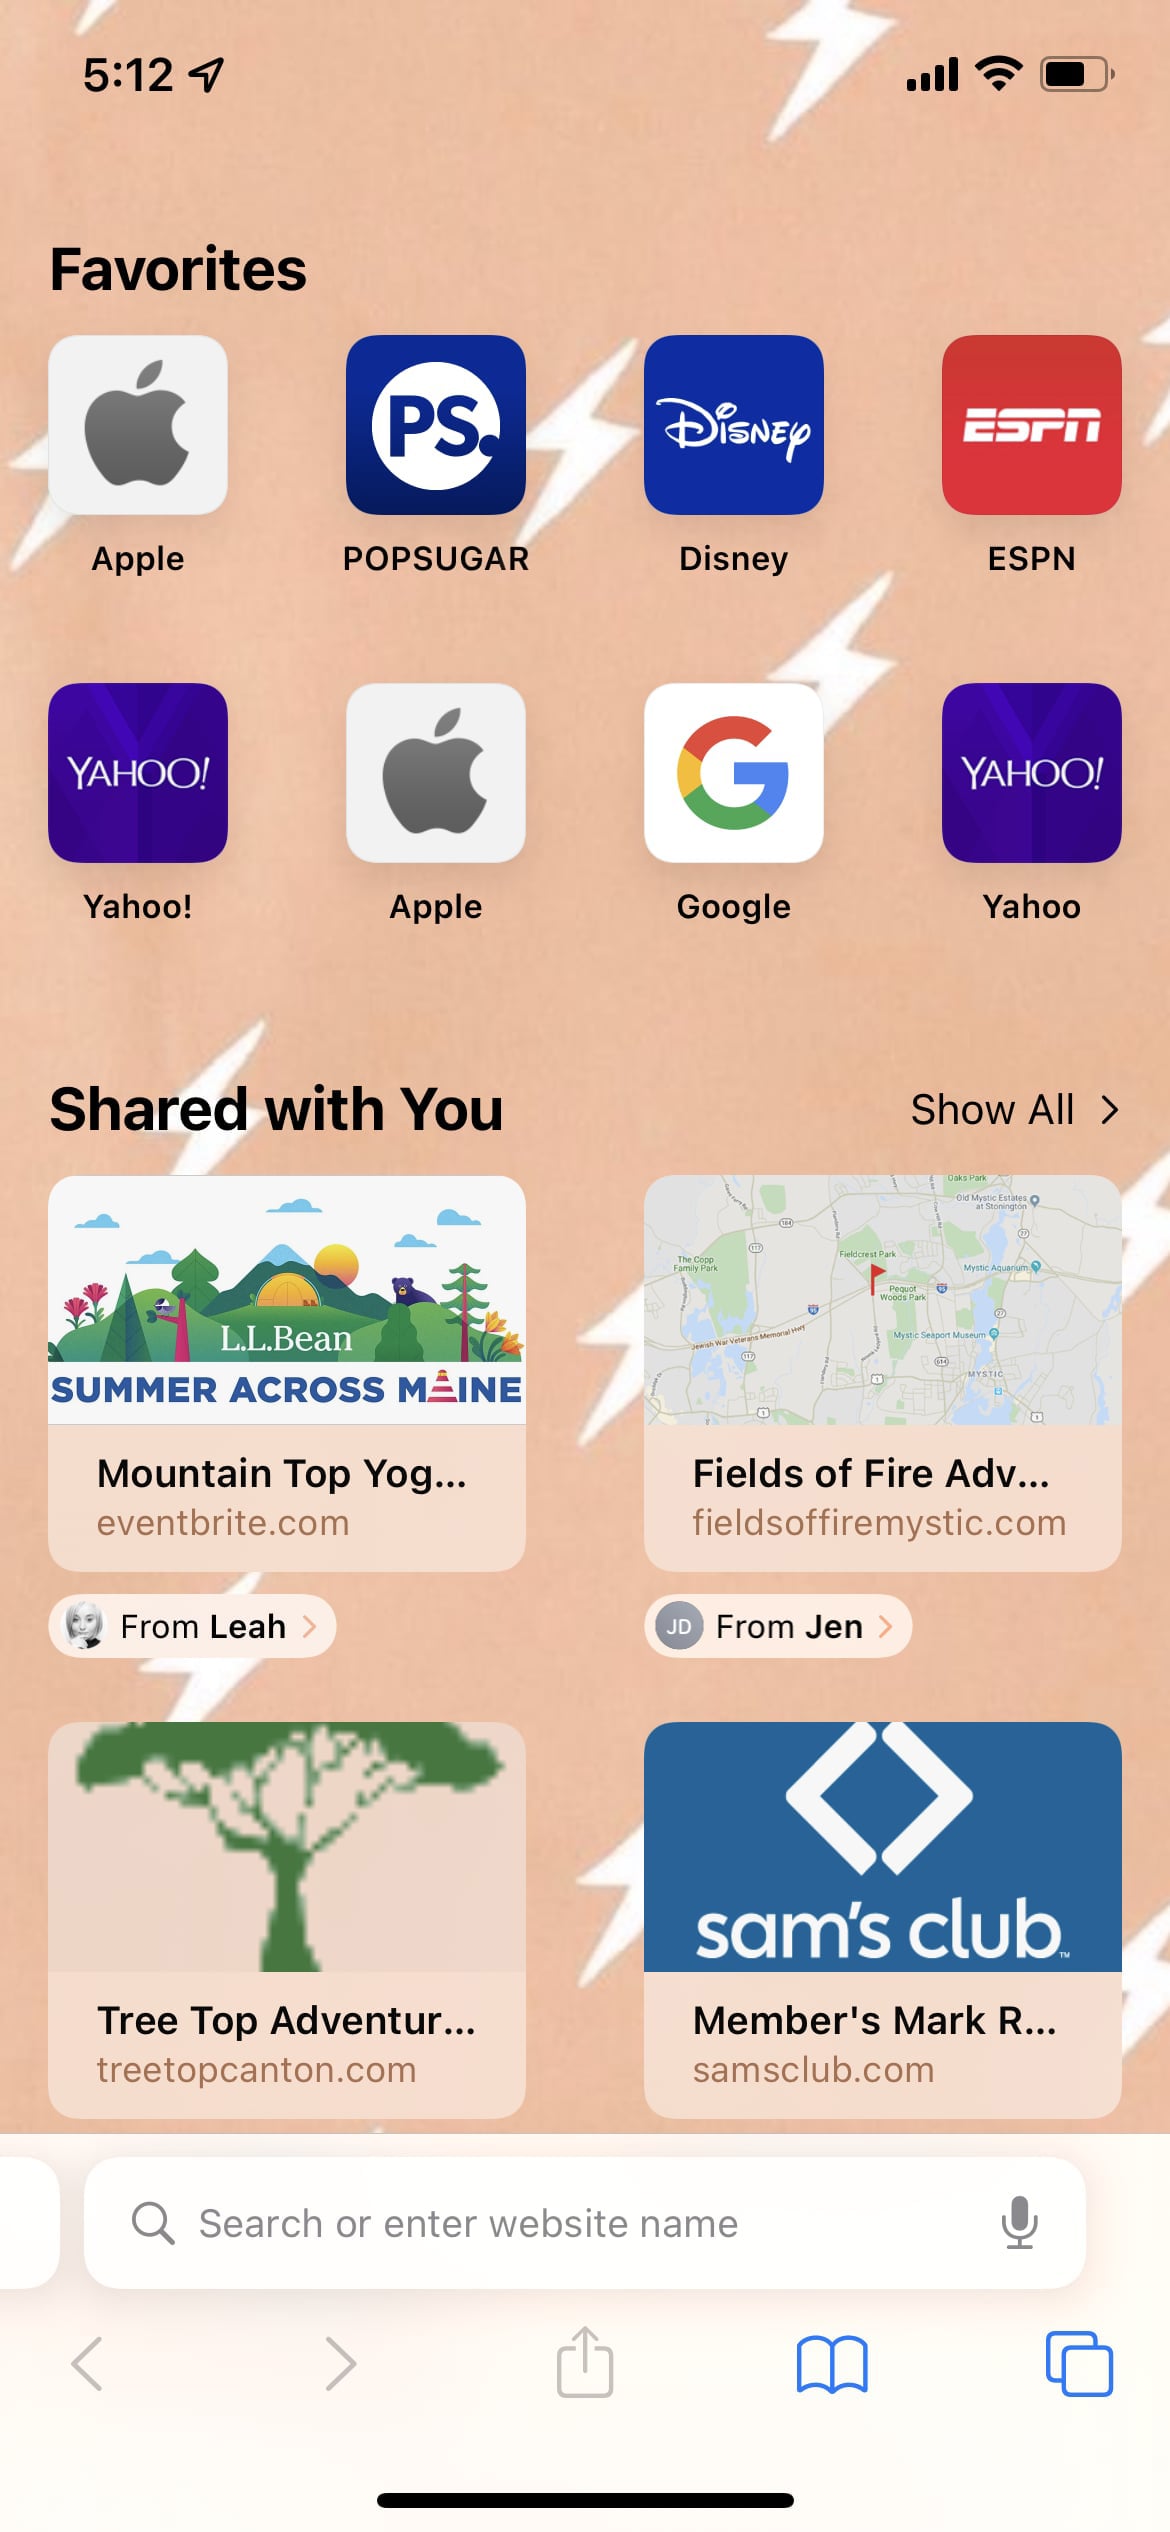 Thay đổi hình nền Safari trên iPhone bằng những bức ảnh ấn tượng, chắc chắn sẽ mang đến trải nghiệm lướt web độc đáo và thú vị hơn. Xem ngay hình ảnh liên quan để khám phá!